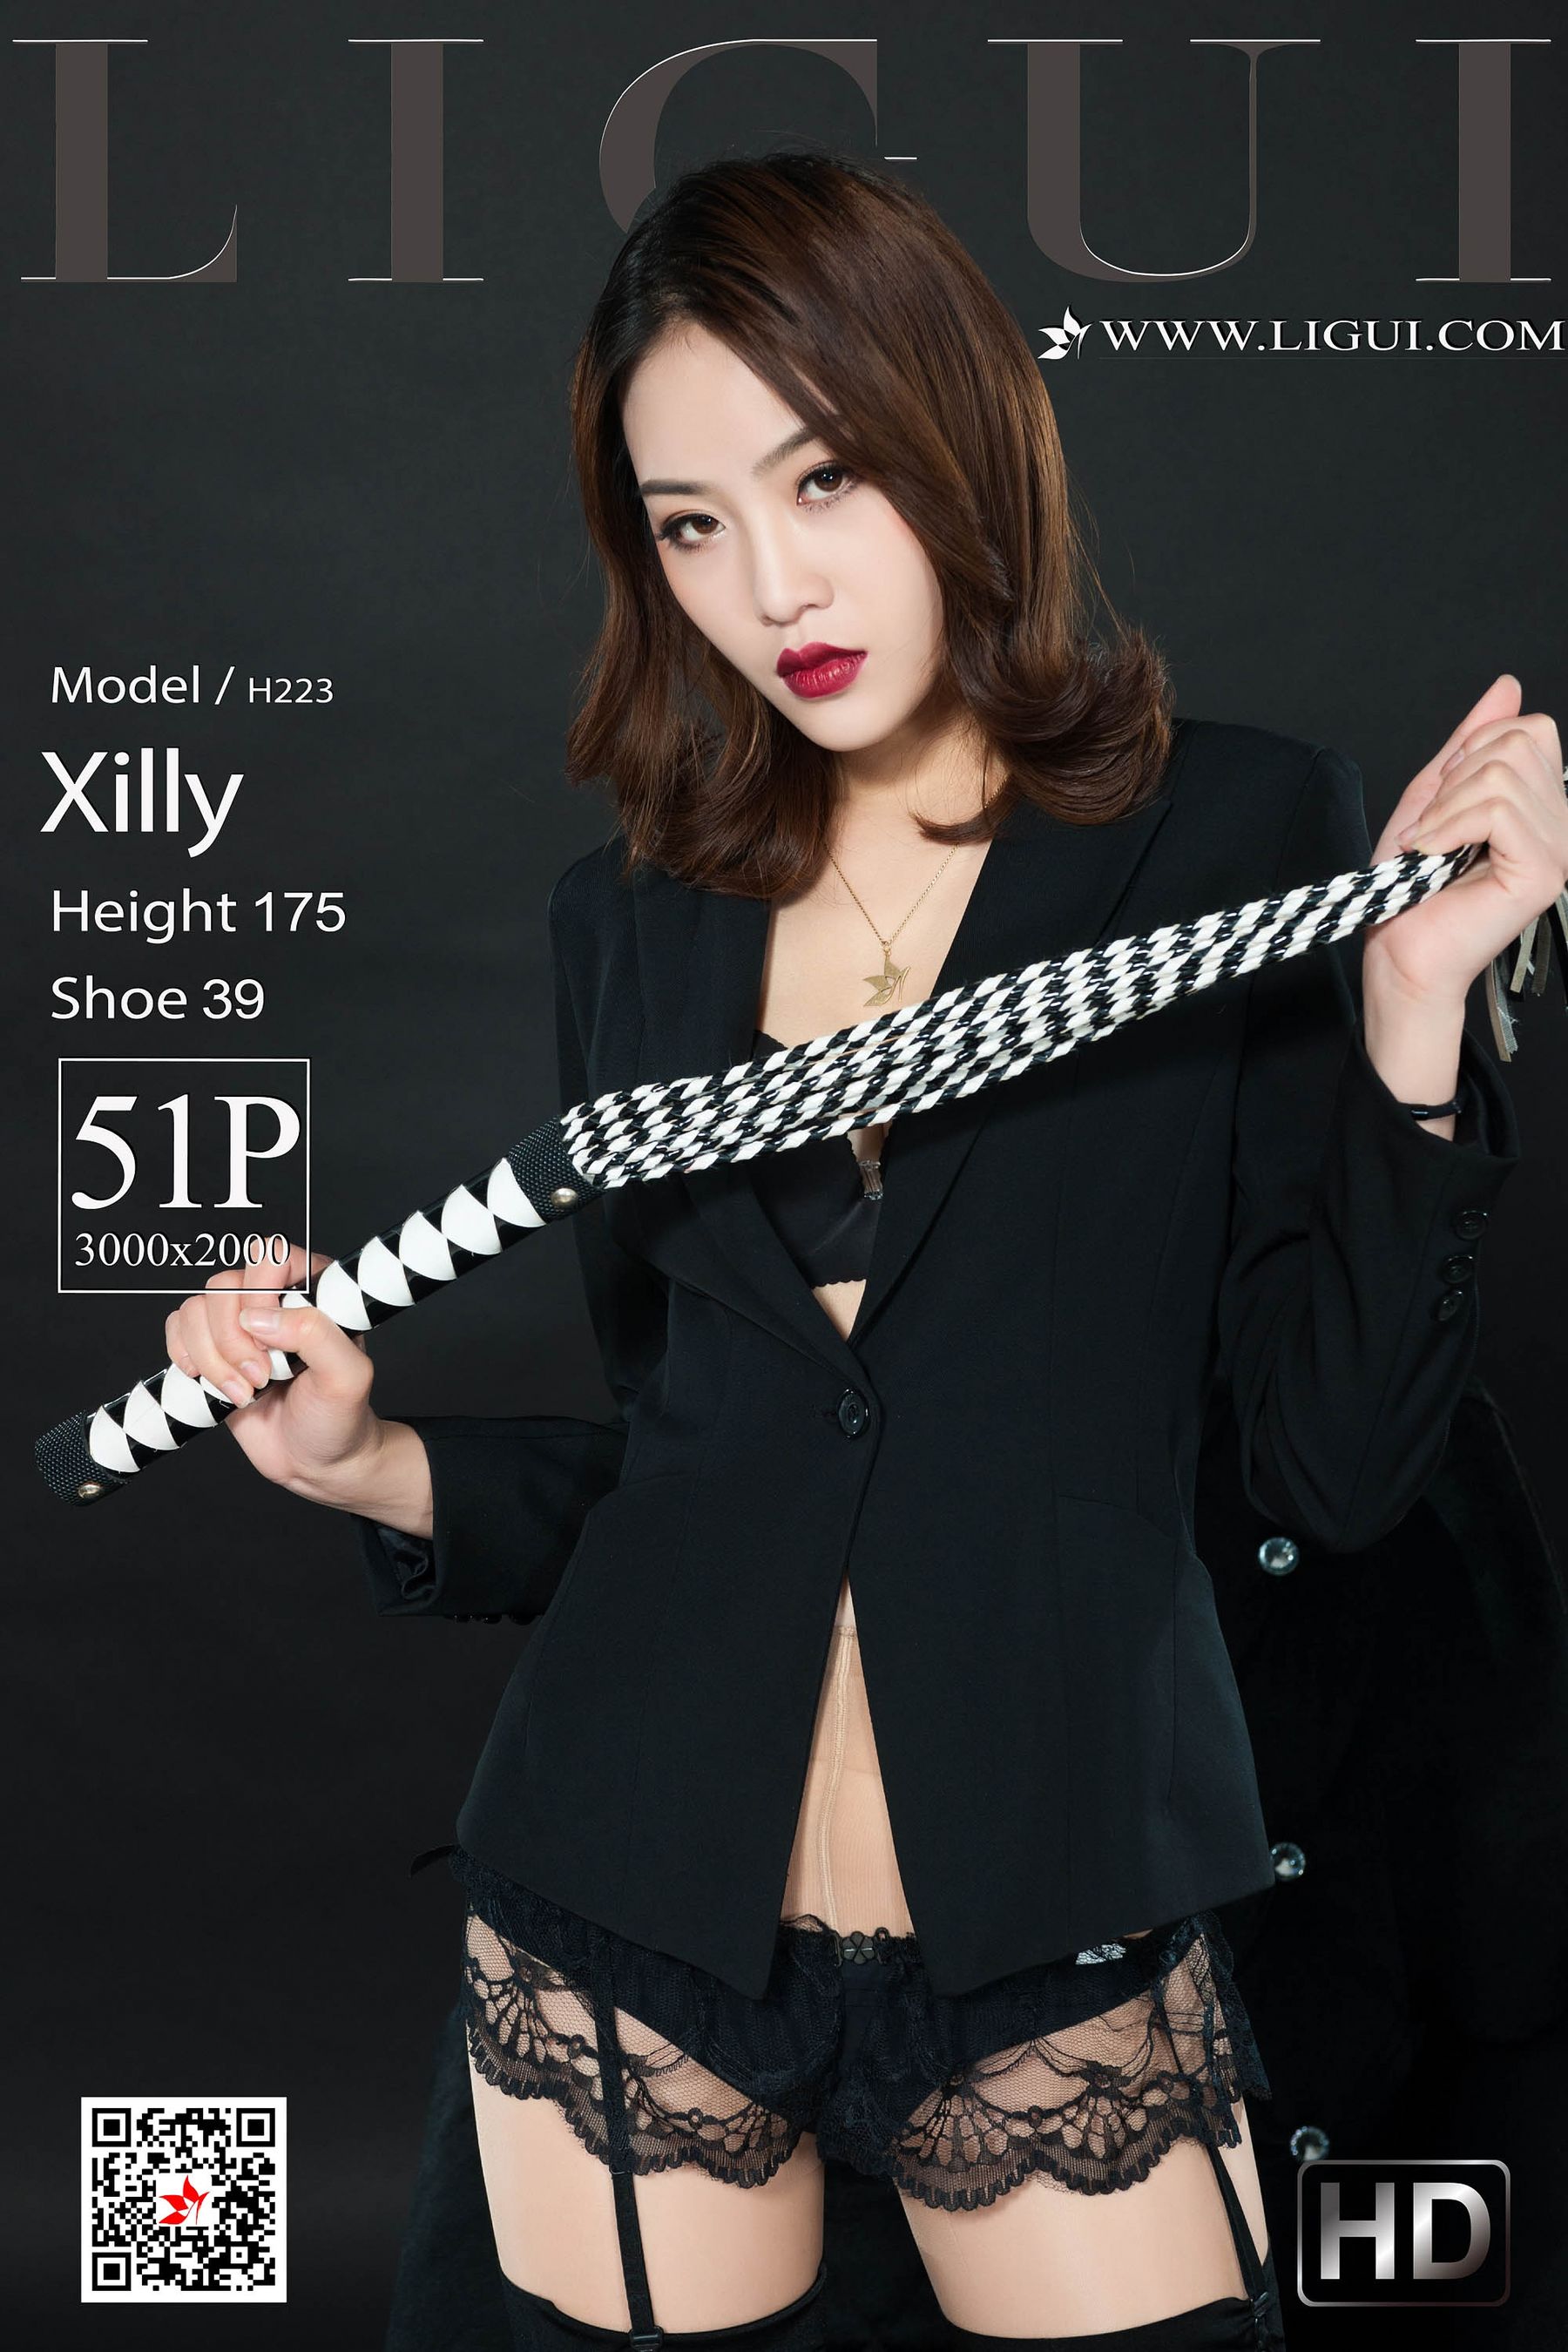 [丽柜LIGUI] 网络丽人 Model Xilly1